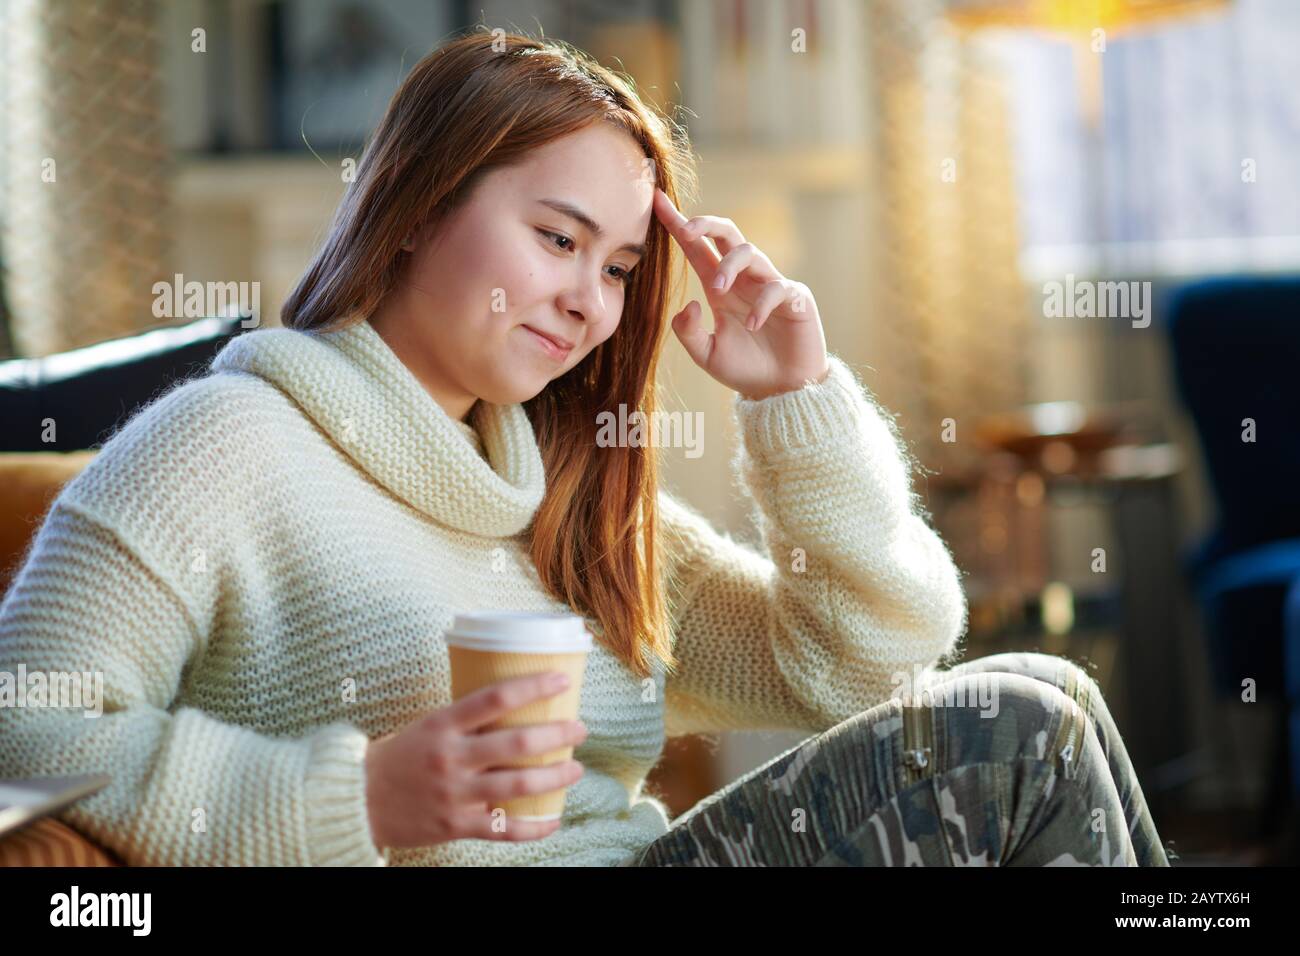 Fröhliches modernes Teenager-Mädchen mit roten Haaren im weißen Pullover, das in der Nähe der Couch sitzt und im modernen Wohnzimmer am sonnigen Wintertag eine Tasse heißes Getränk serviert. Stockfoto